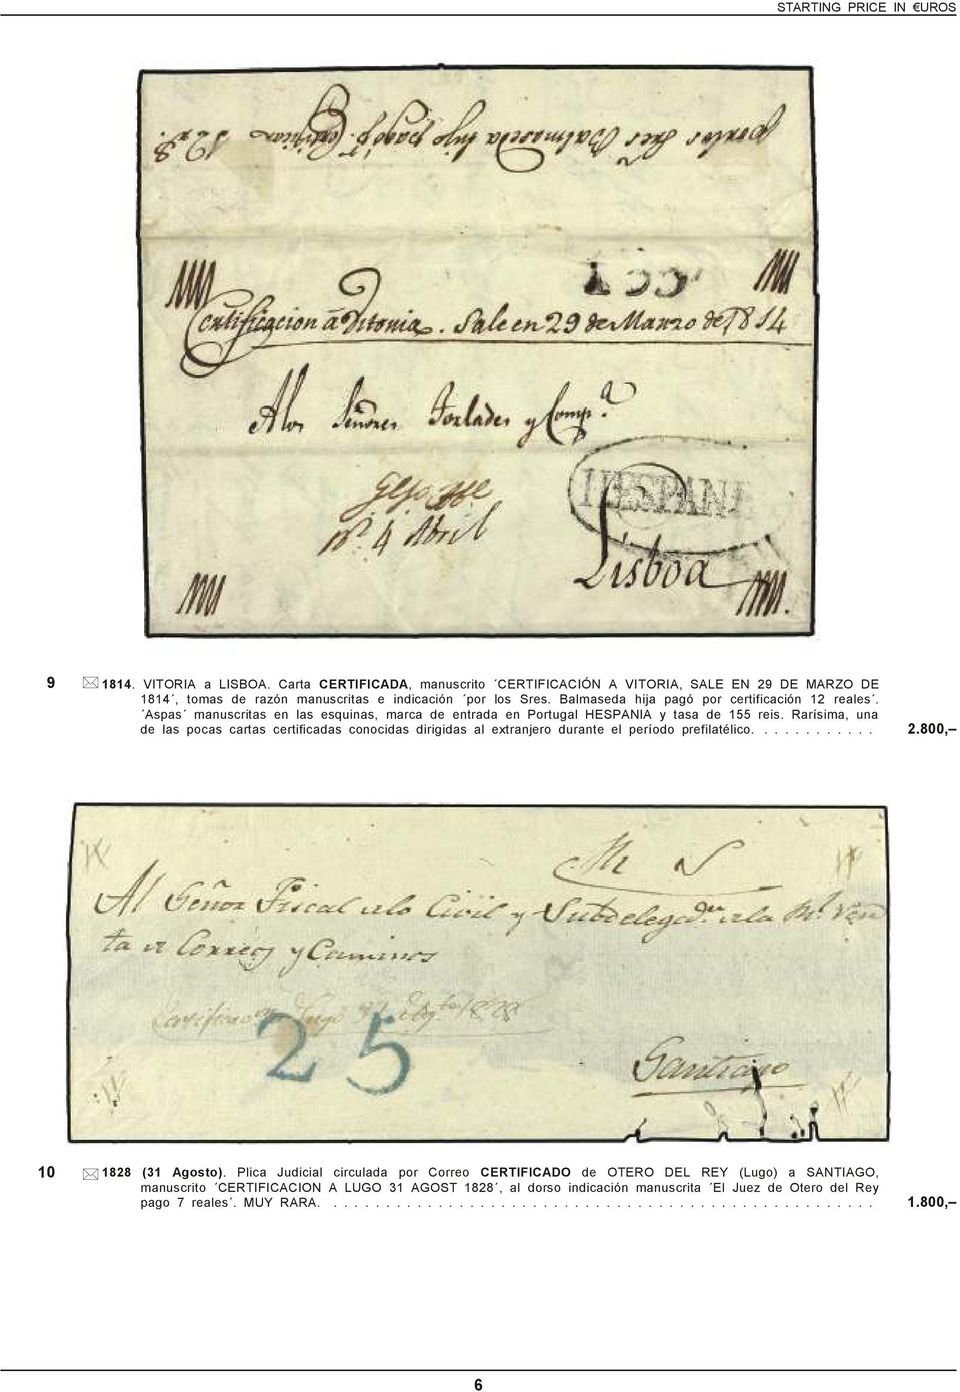 Rarísima, una de las pocas cartas certificadas conocidas dirigidas al extranjero durante el período prefilatélico............ 2.800, 10 1828 (31 Agosto).